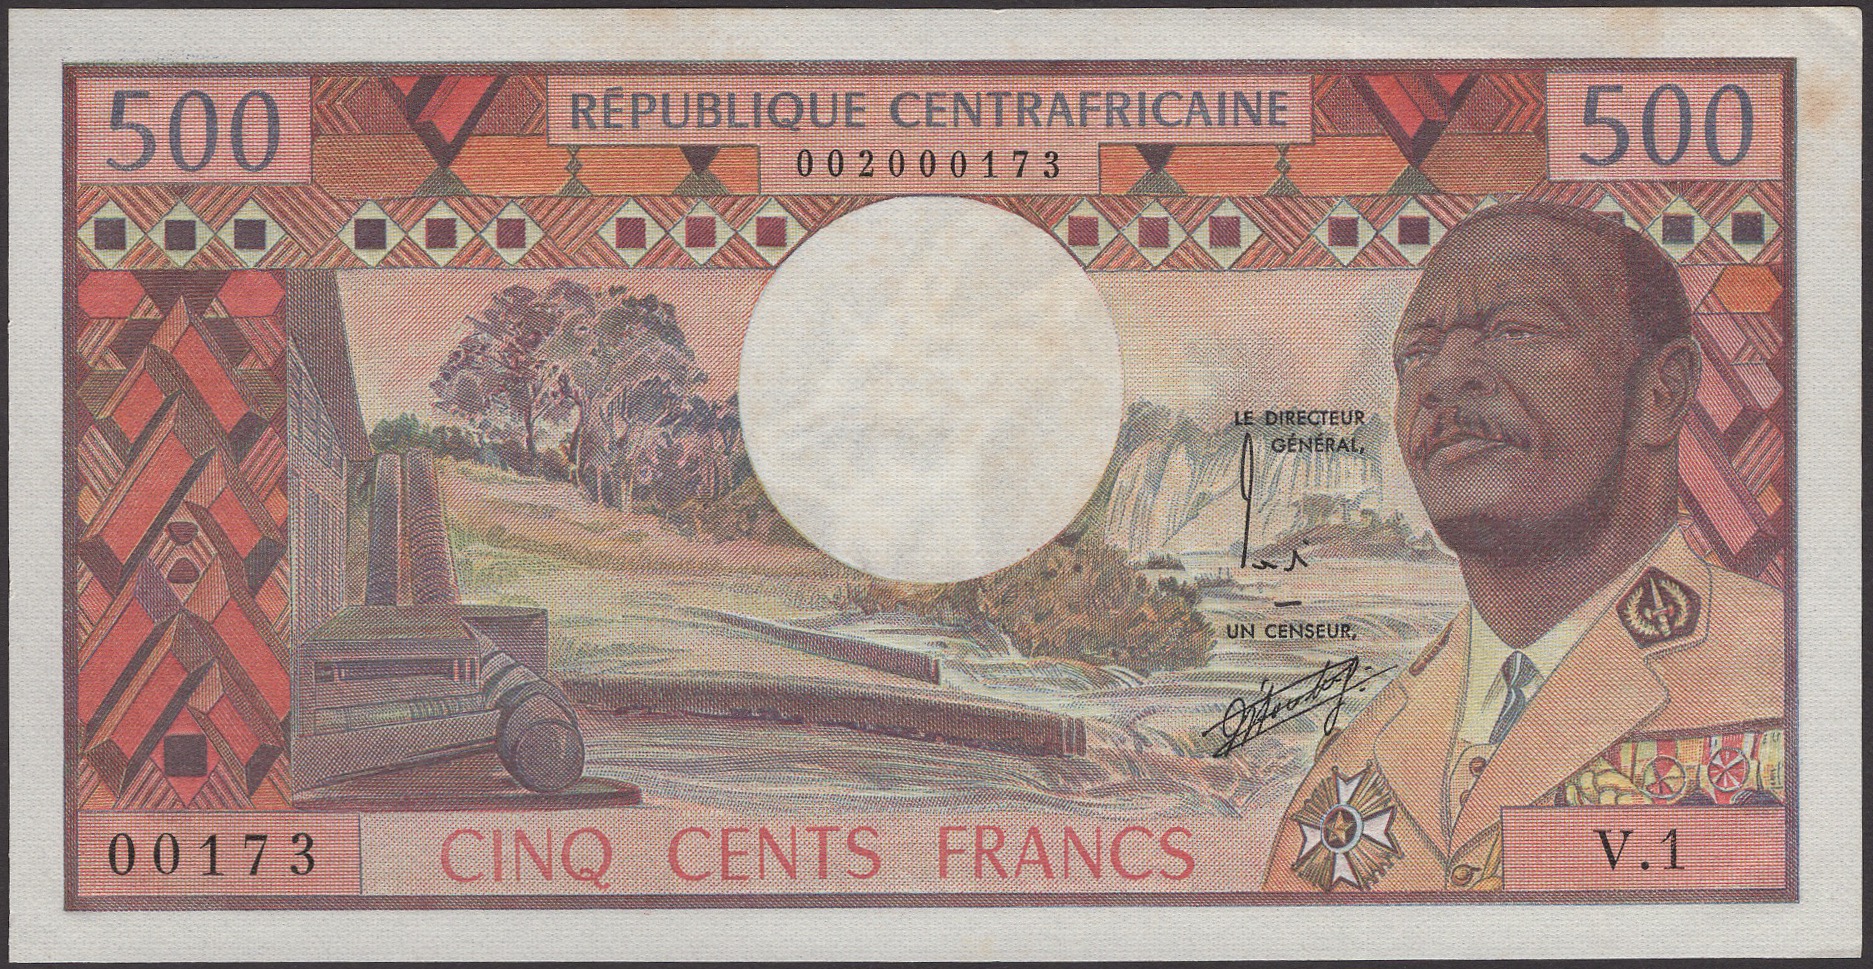 Banque des etats de l'Afrique Centrale, Republique Centrafricaine, 500 Francs, ND (1974),...